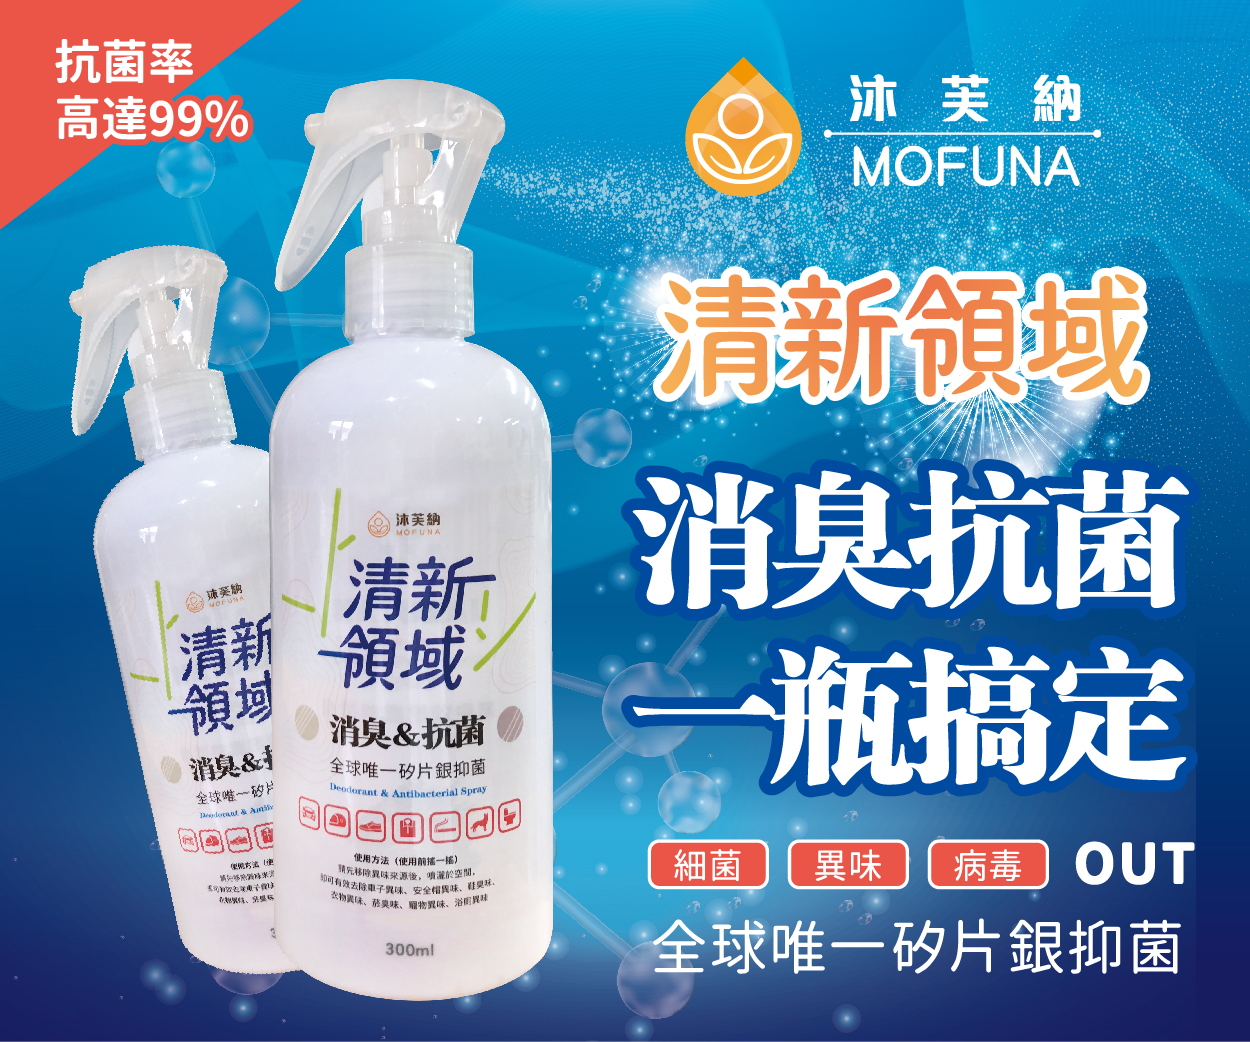 沐芙納-清新領域消臭抗菌噴劑產品介紹